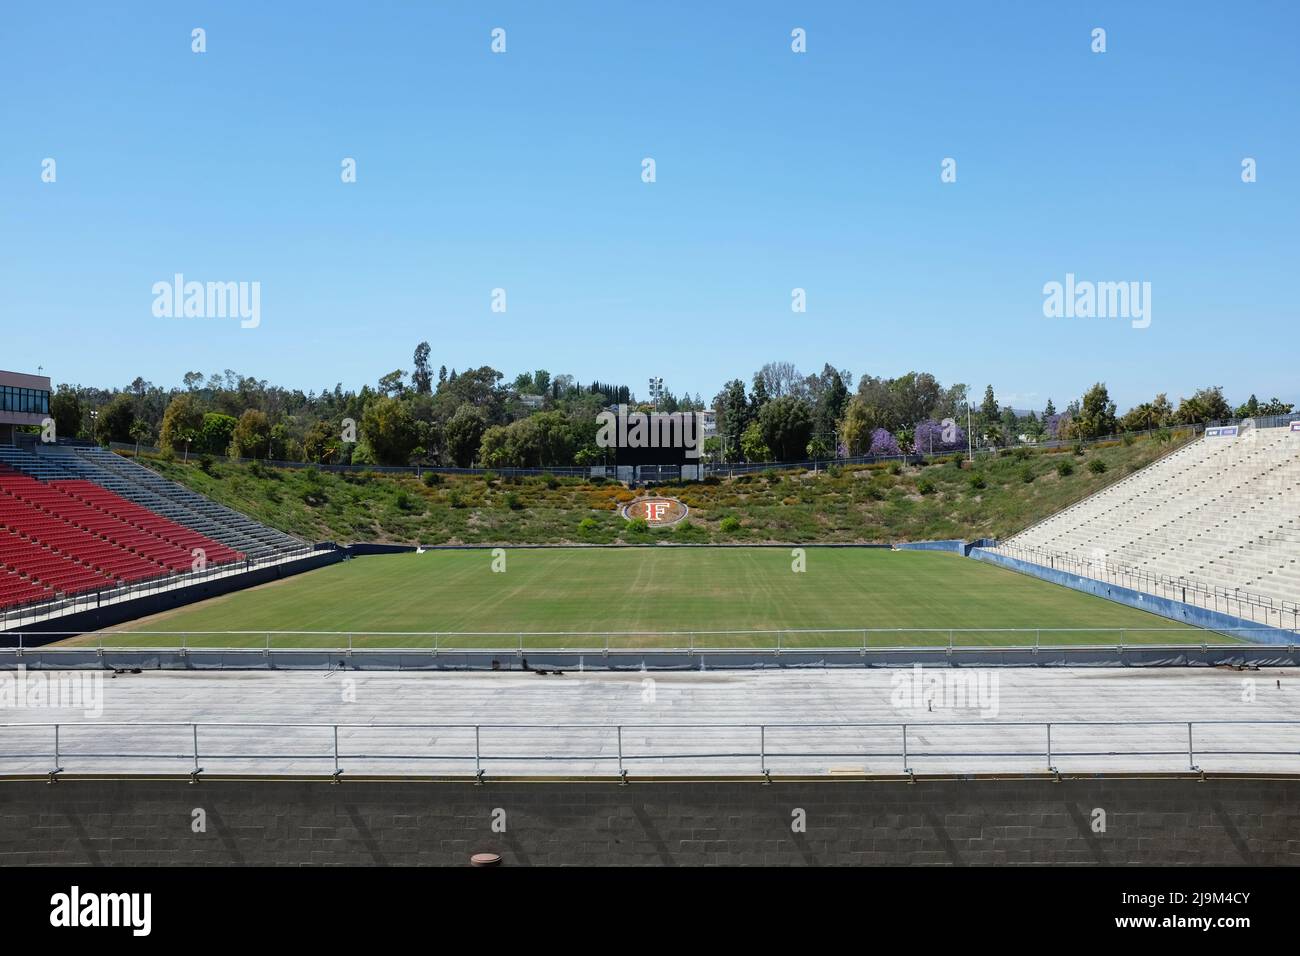 FULLERTON CALIFORNIA - 22. MAI 2020: Titan Stadium, auf dem Campus der California State University Fullerton, CSUF, Heimat des Titans Football Teams. Stockfoto